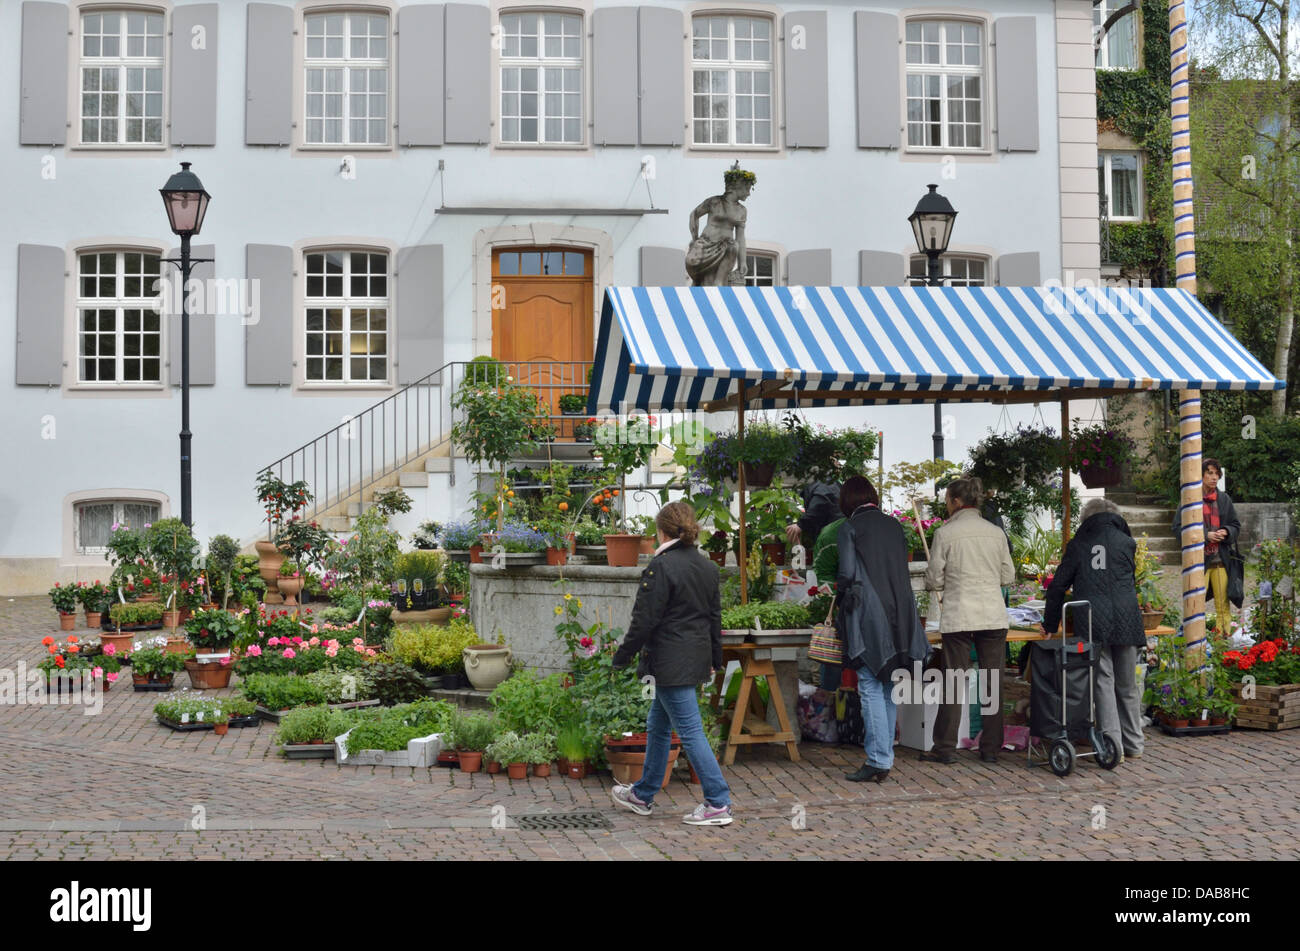 Flower market outside the Gemeinde in Dorfplatz, Arlesheim, Basel-Landschaft, Switzerland Stock Photo